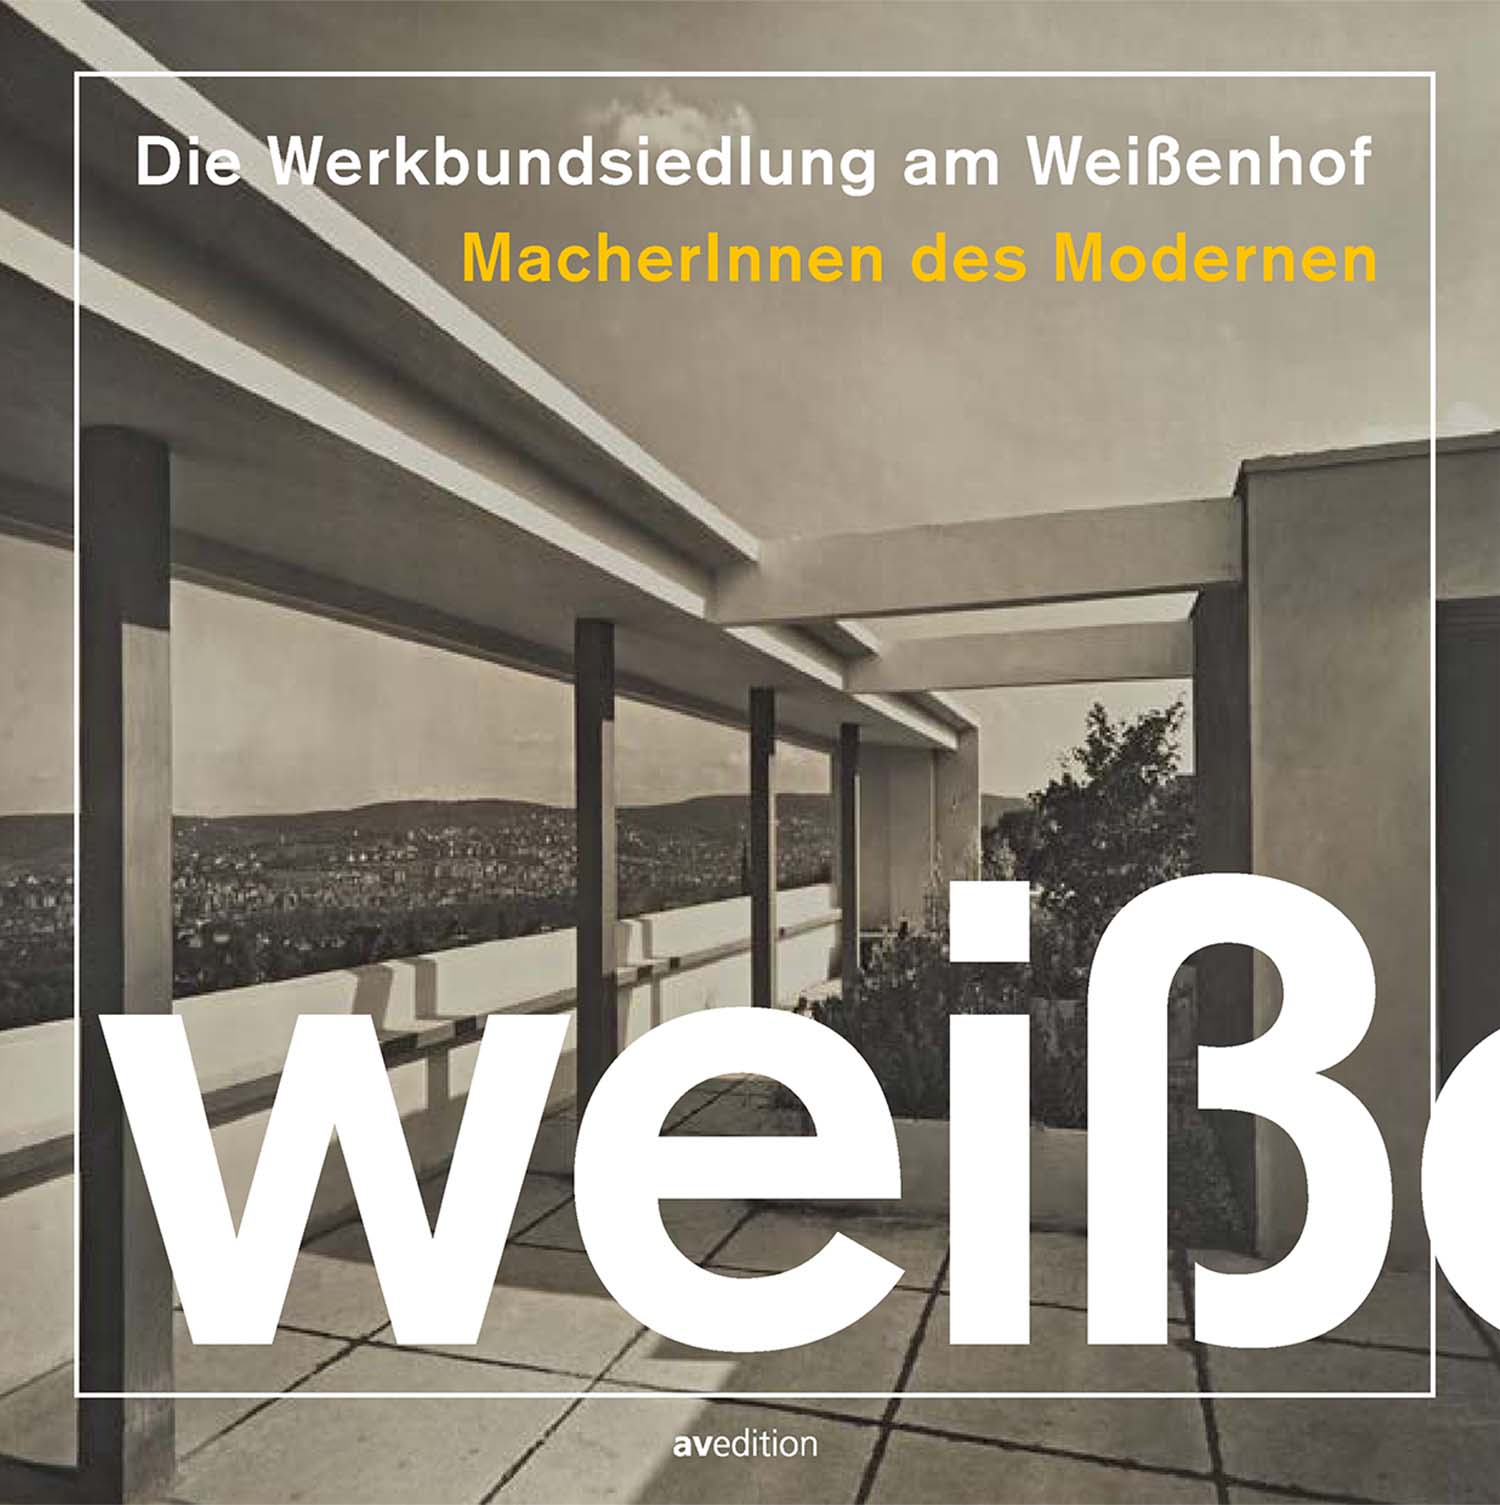 Imagen de  El Werkbundsiedlung en la Weißenhof, Creadores del Modernismo.